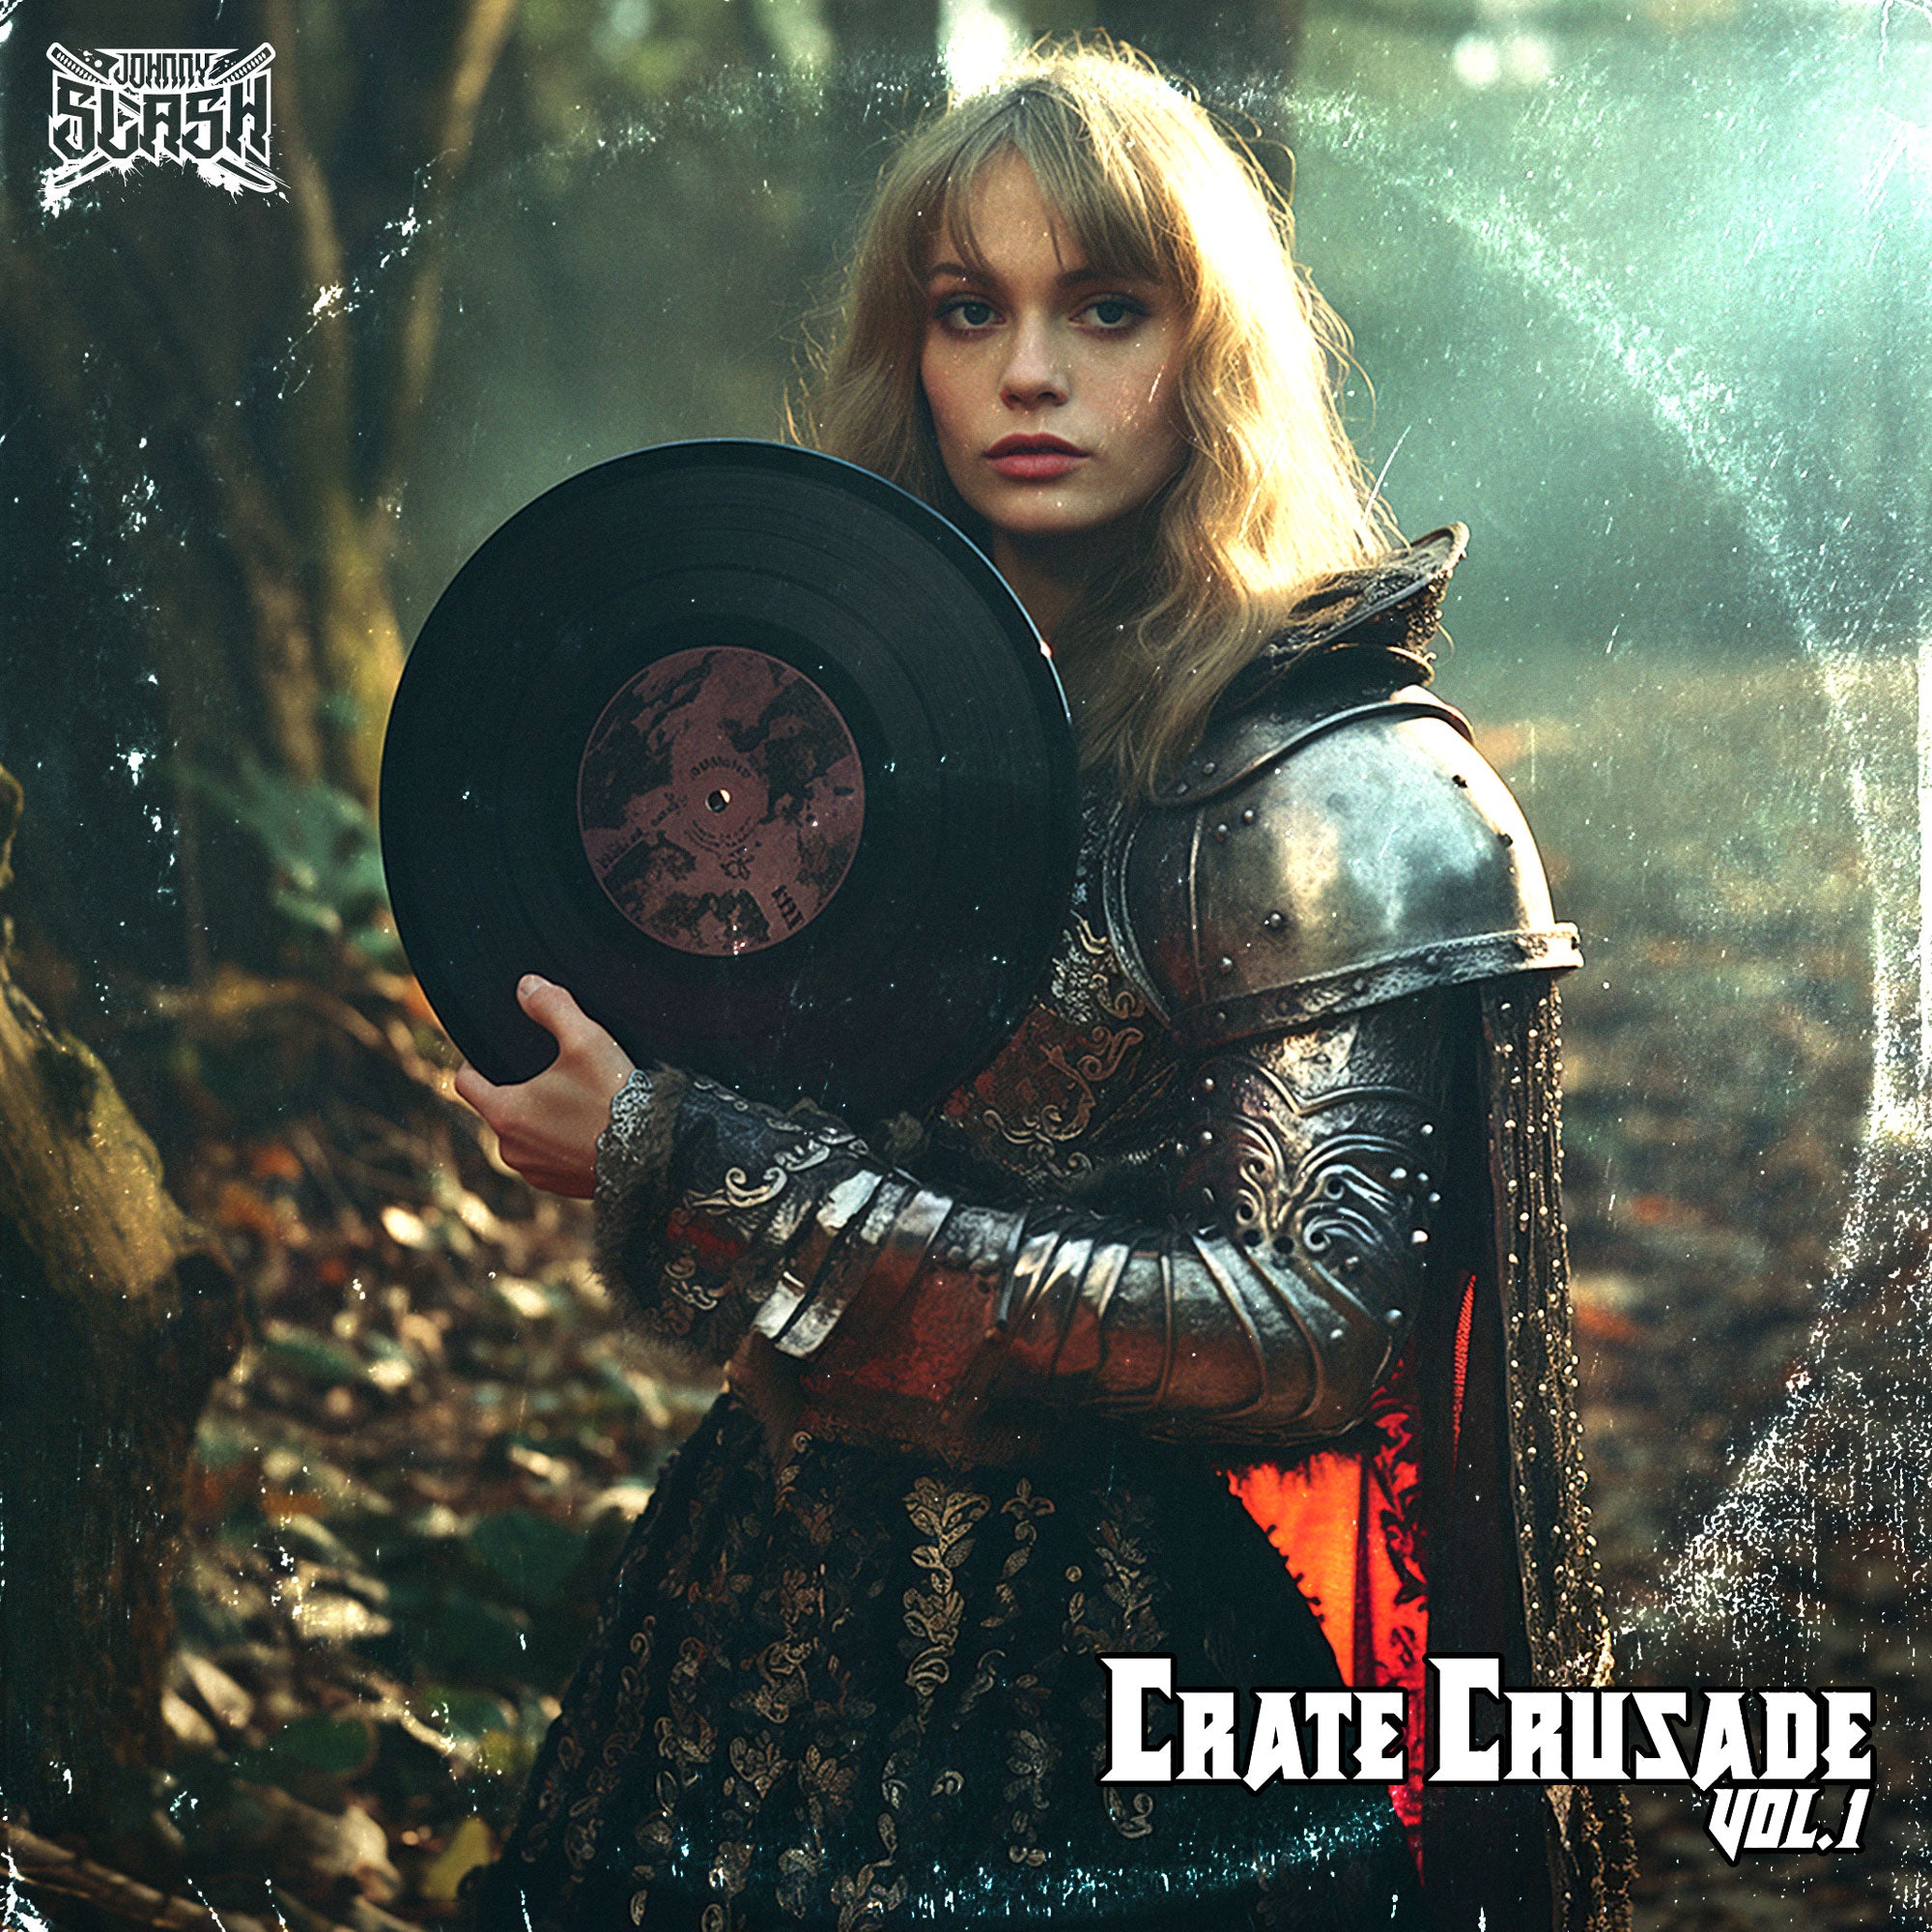 Crate Crusade Vol 1